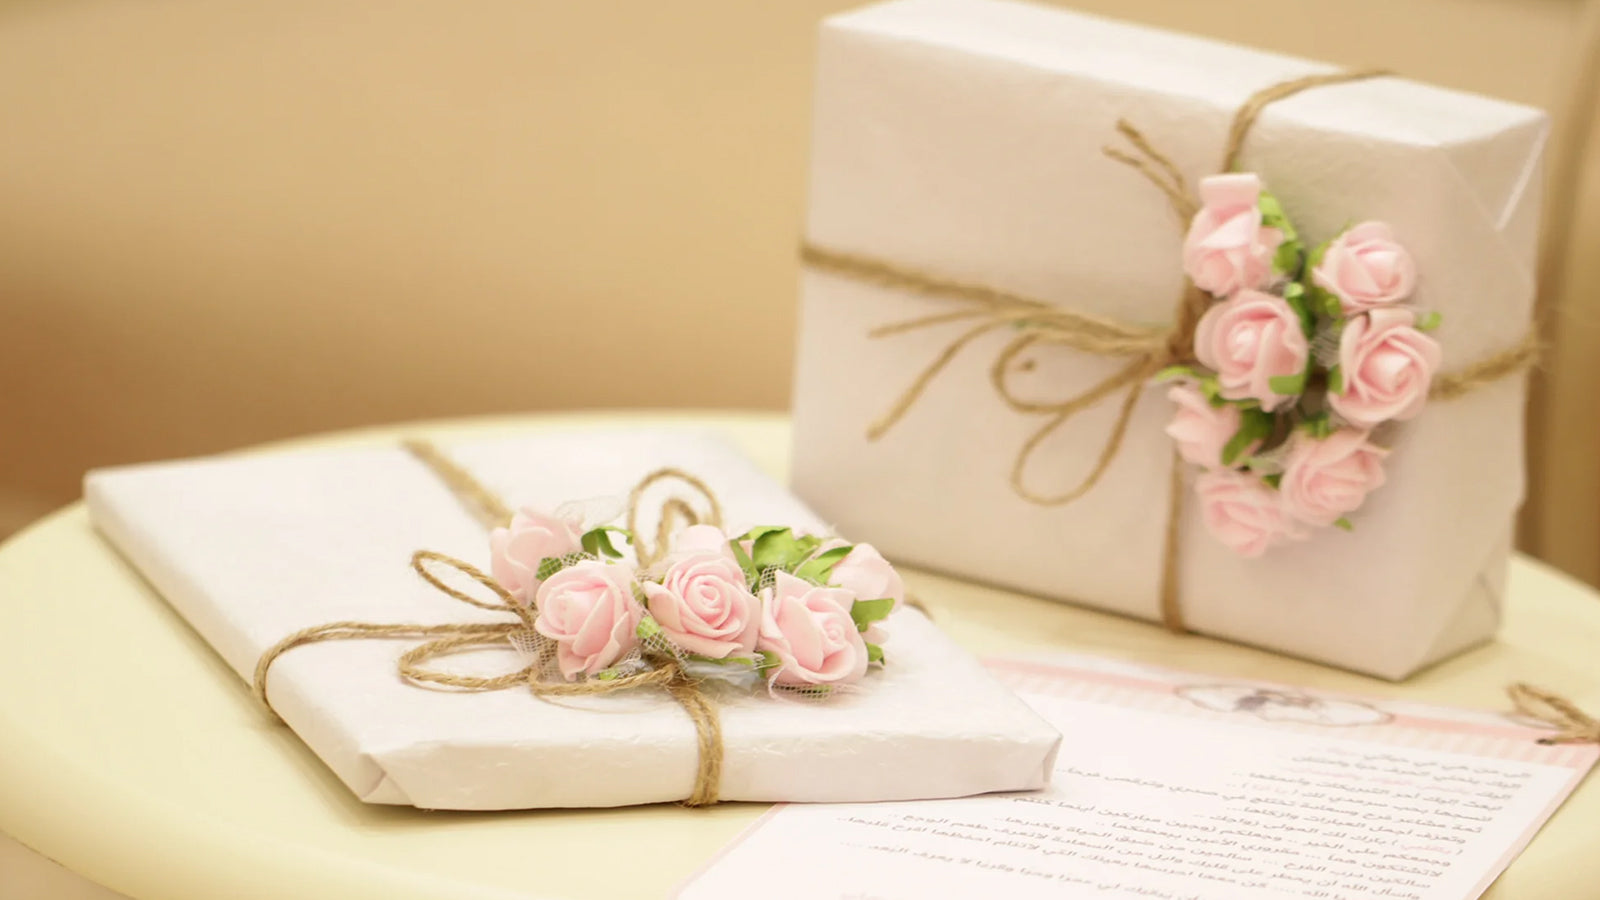 Подарки на 16 лет свадьбы по низким ценам в интернет-магазине подарков MagicMag